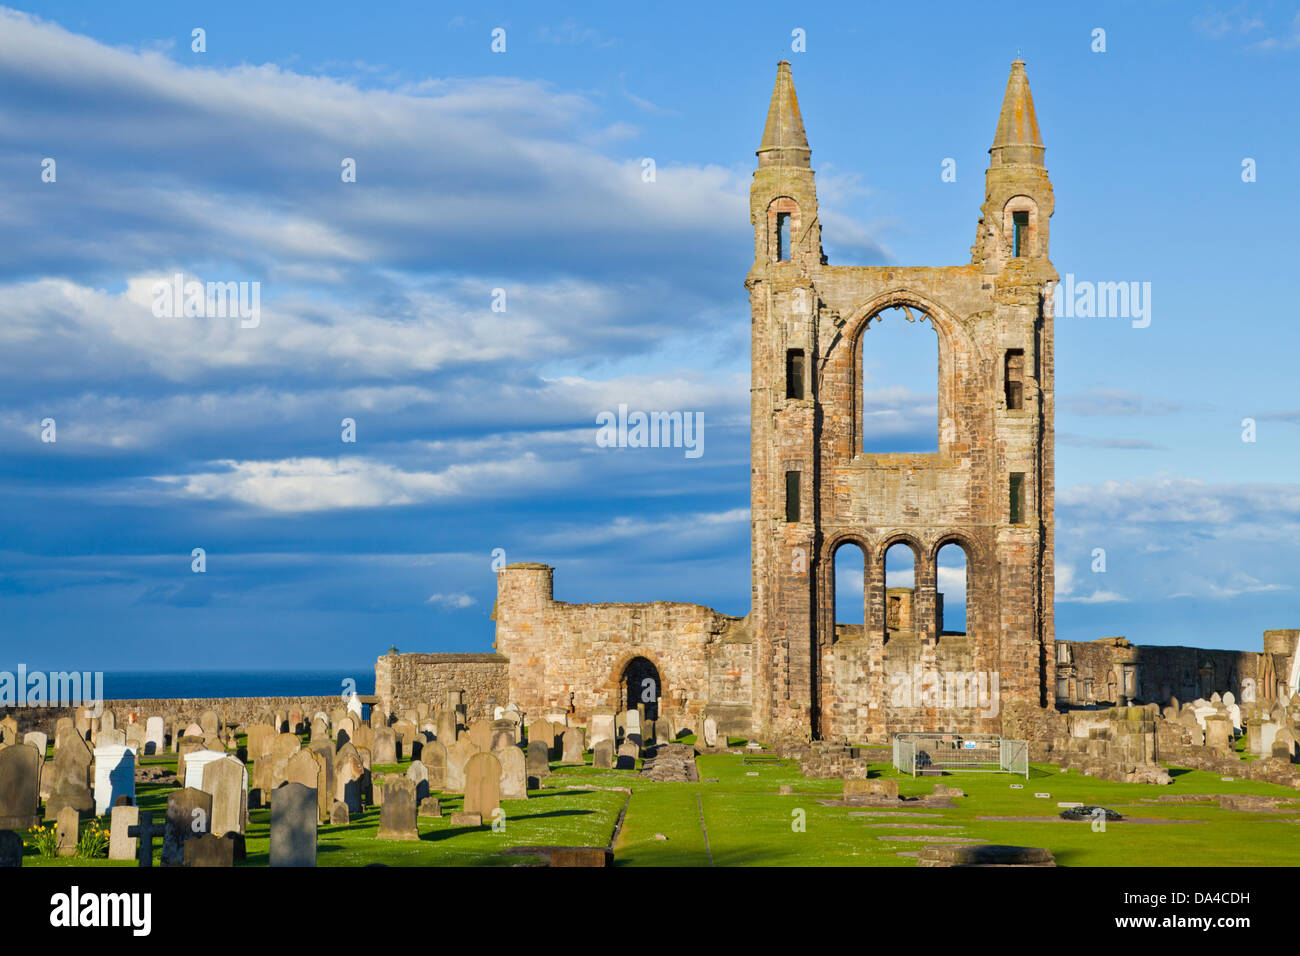 St. Andrews Schottland Ruinen von St. Andrews Cathedral Royal Burgh von St. Andrews Fife Schottland GB Europa Stockfoto